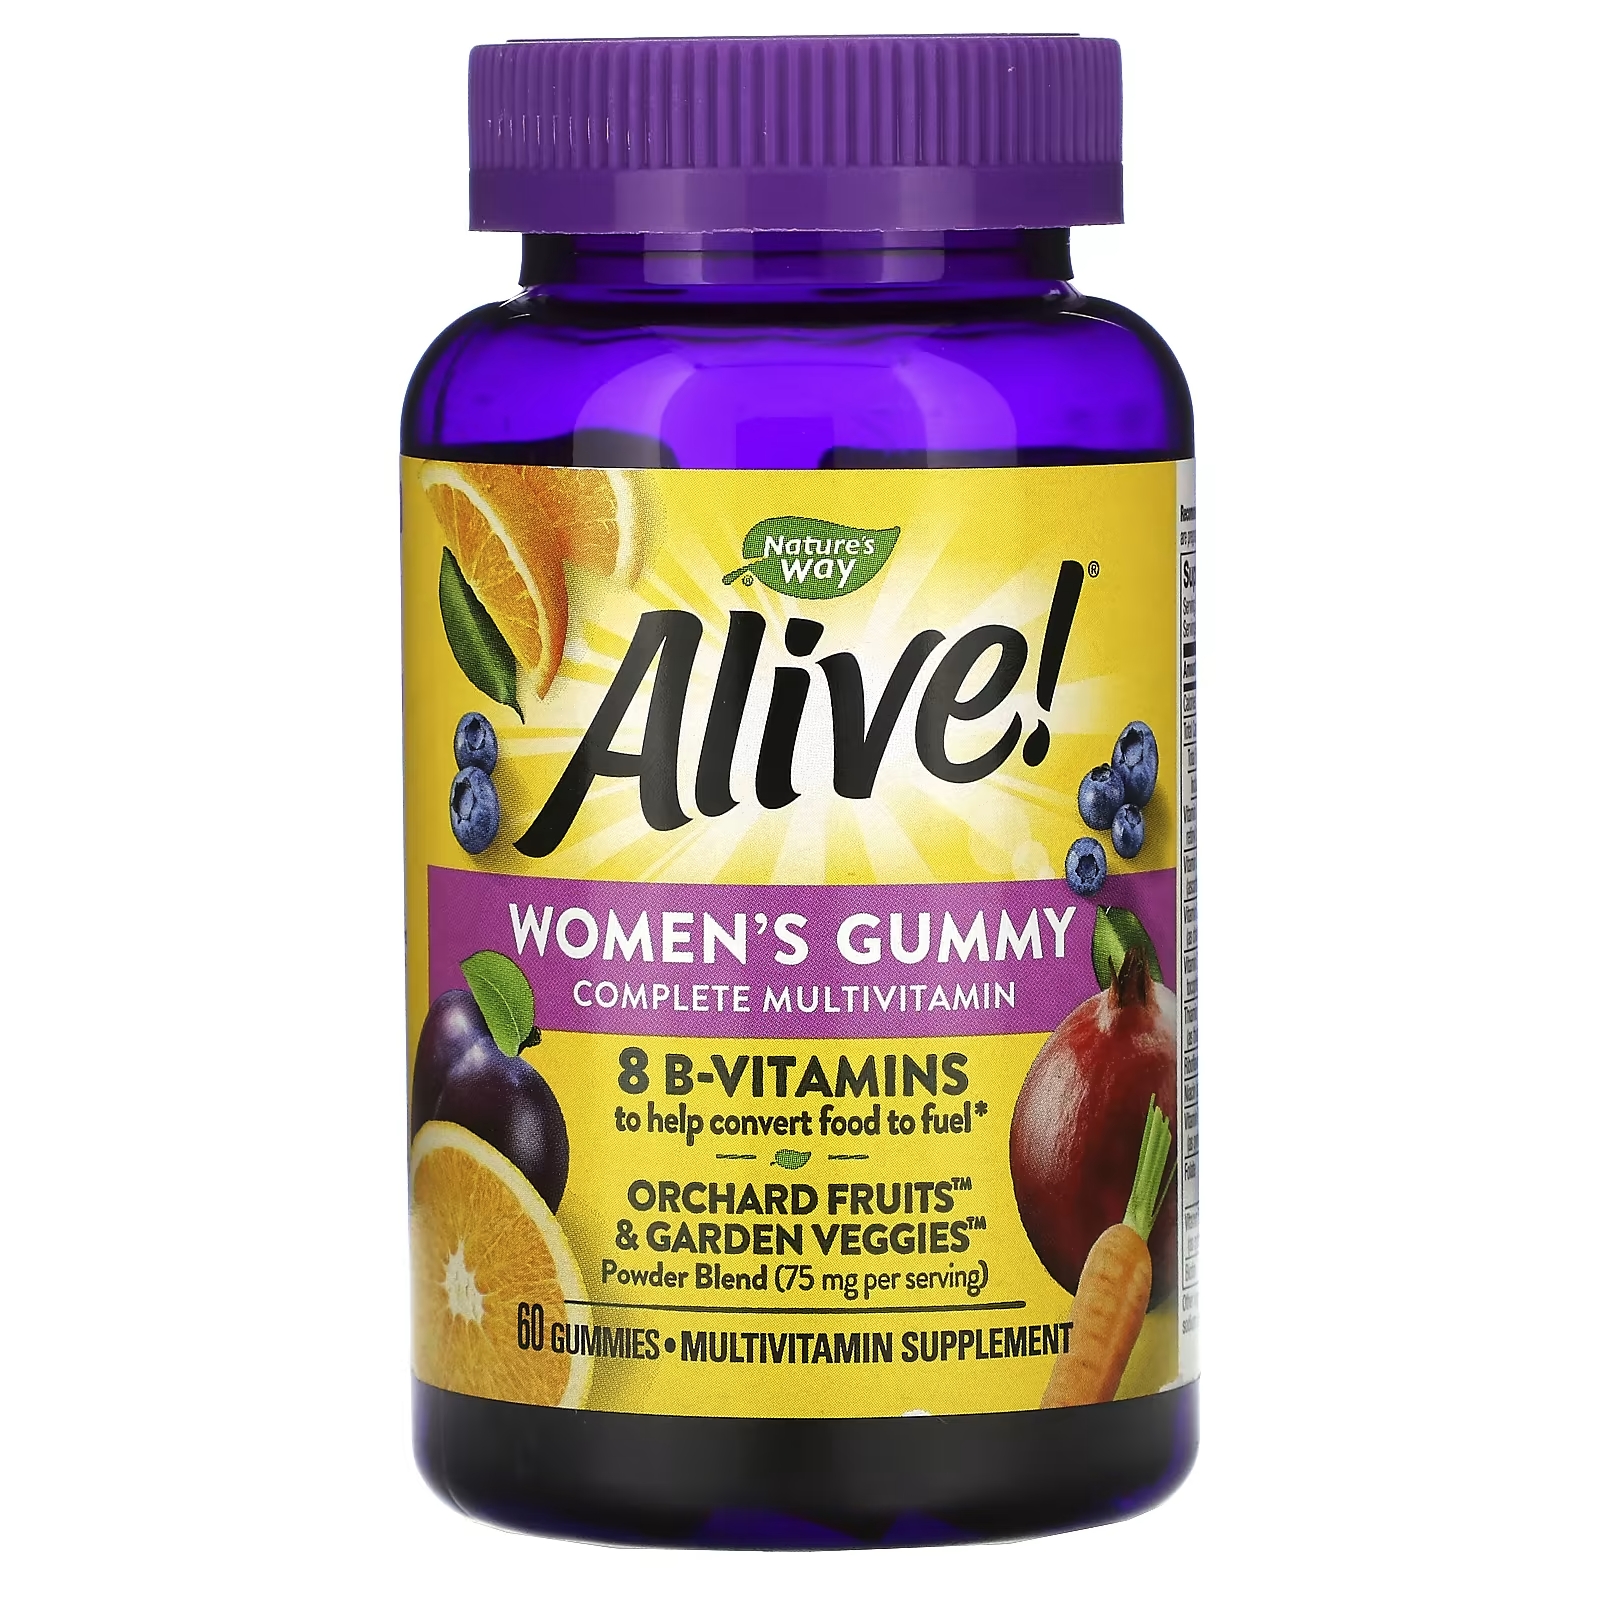 Мультивитаминный Комплекс для Женщин Nature's Way Alive, ягодный вкус, 60 жевательных таблеток nature s way alive мультивитаминный комплекс для женщин 50 таблеток